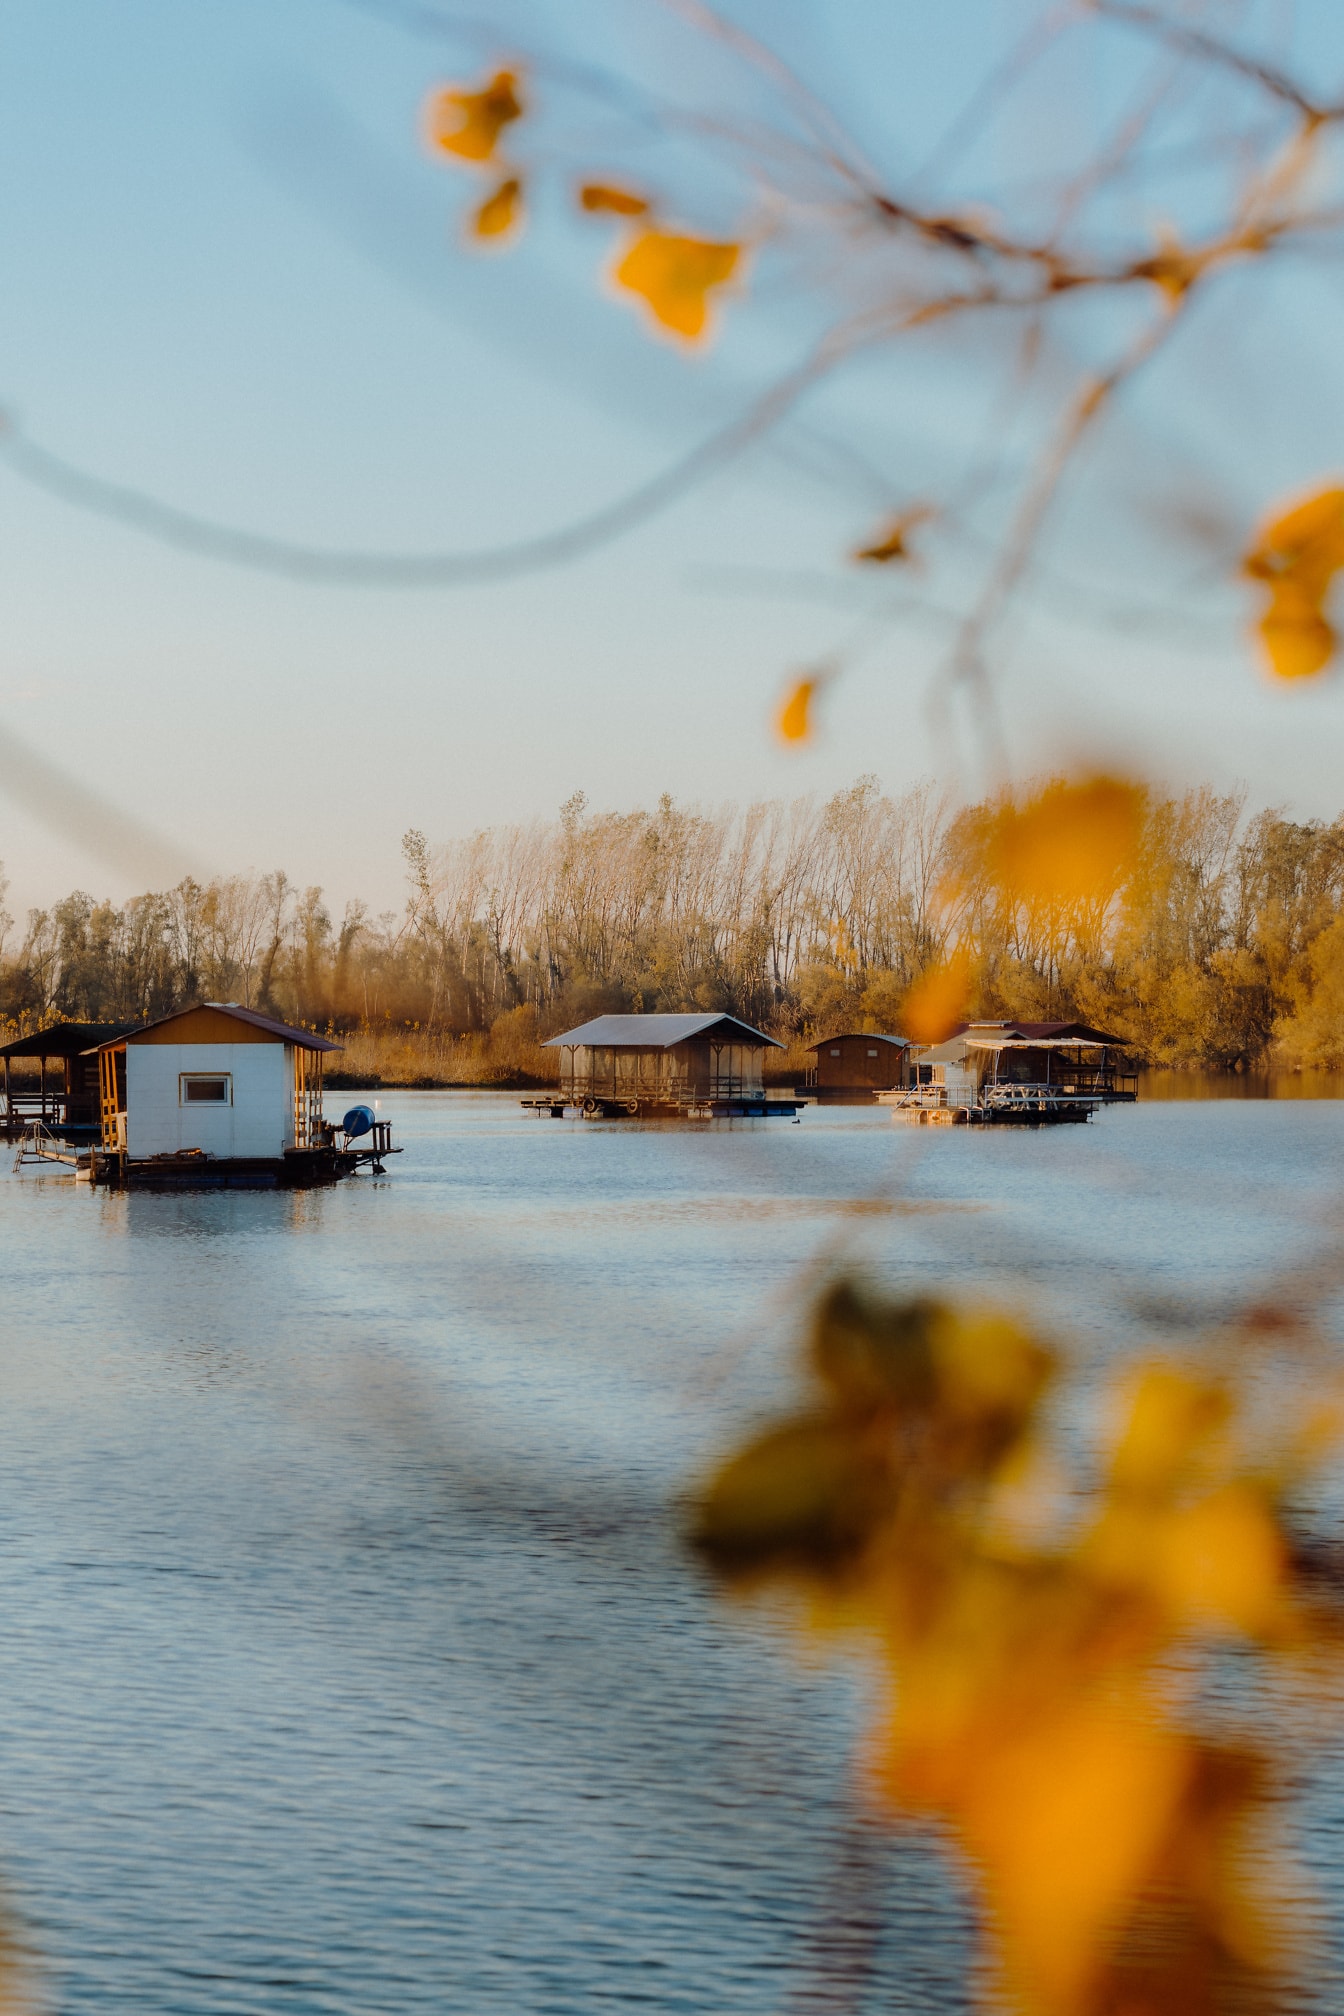 Casas em jangadas flutuantes em um lago Tikvara pelo rio Danúbio